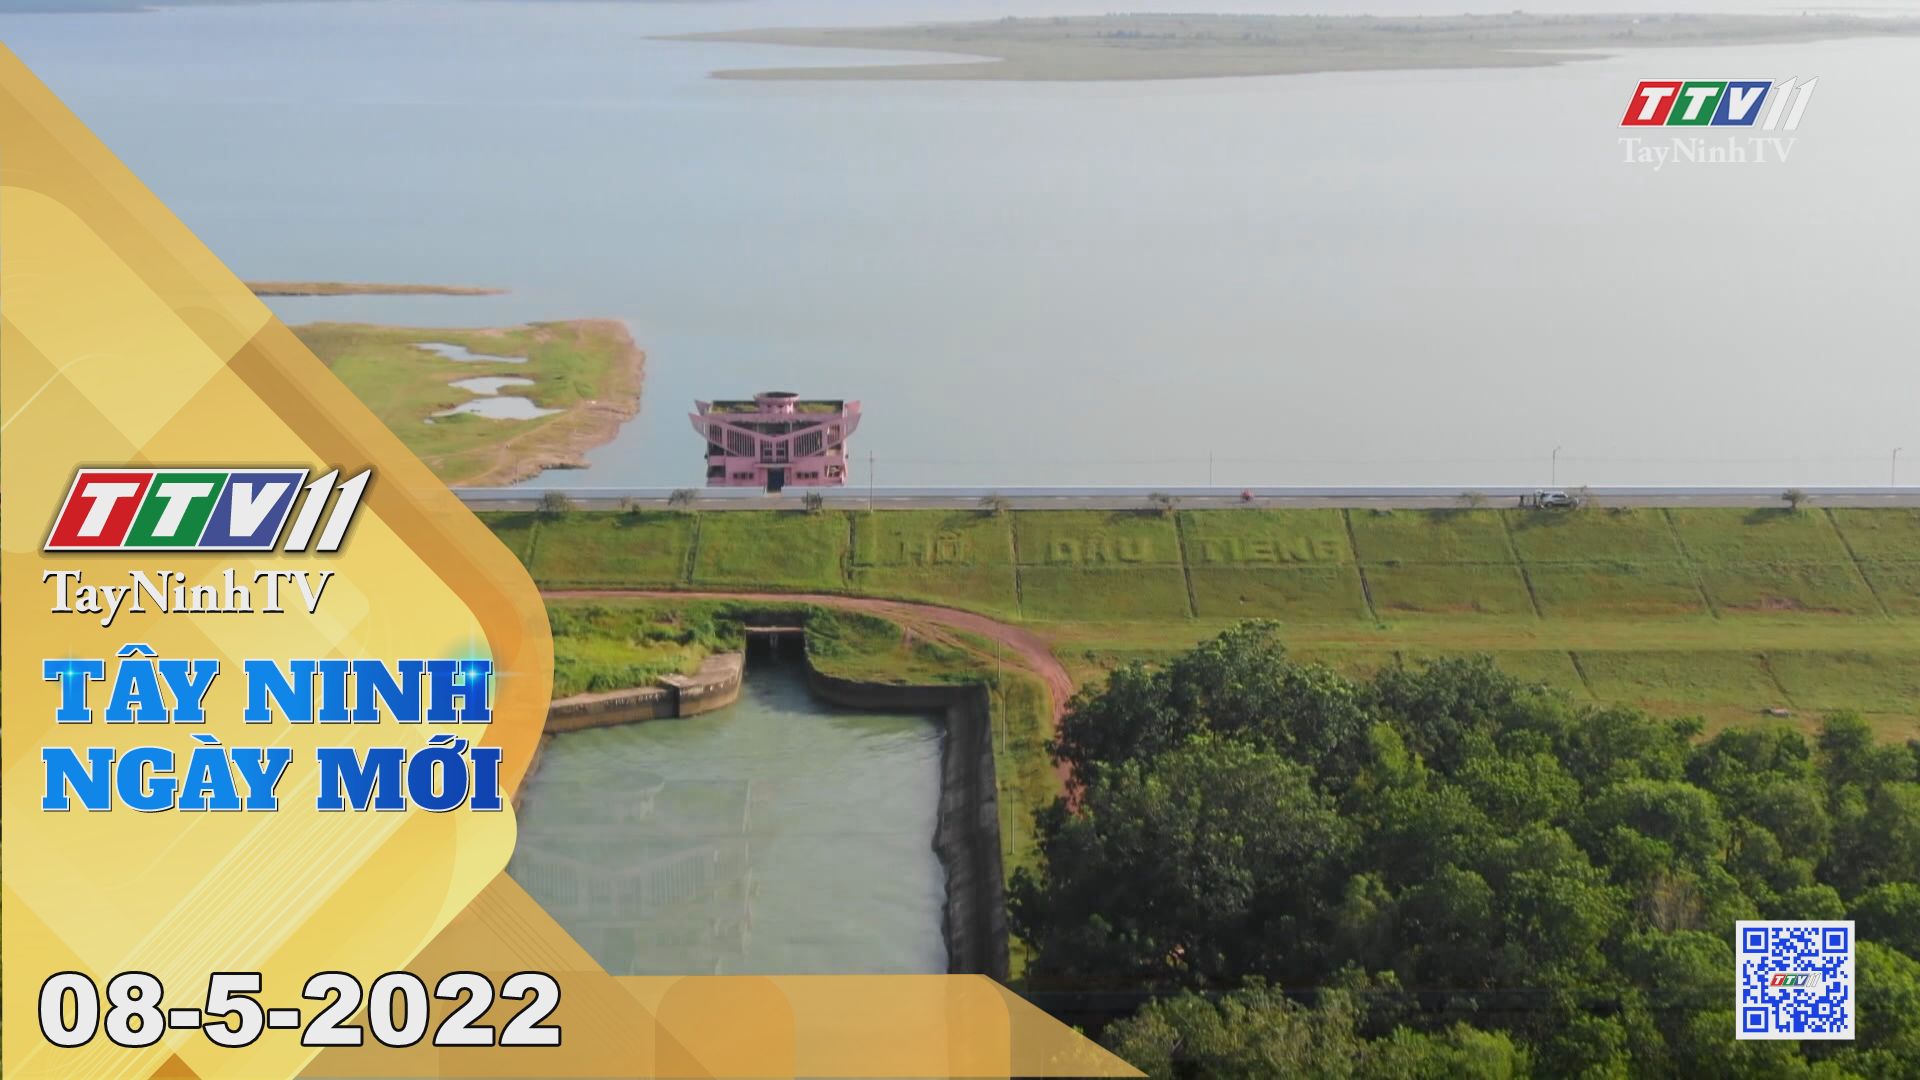 Tây Ninh ngày mới 08-5-2022 | Tin tức hôm nay | TayNinhTV